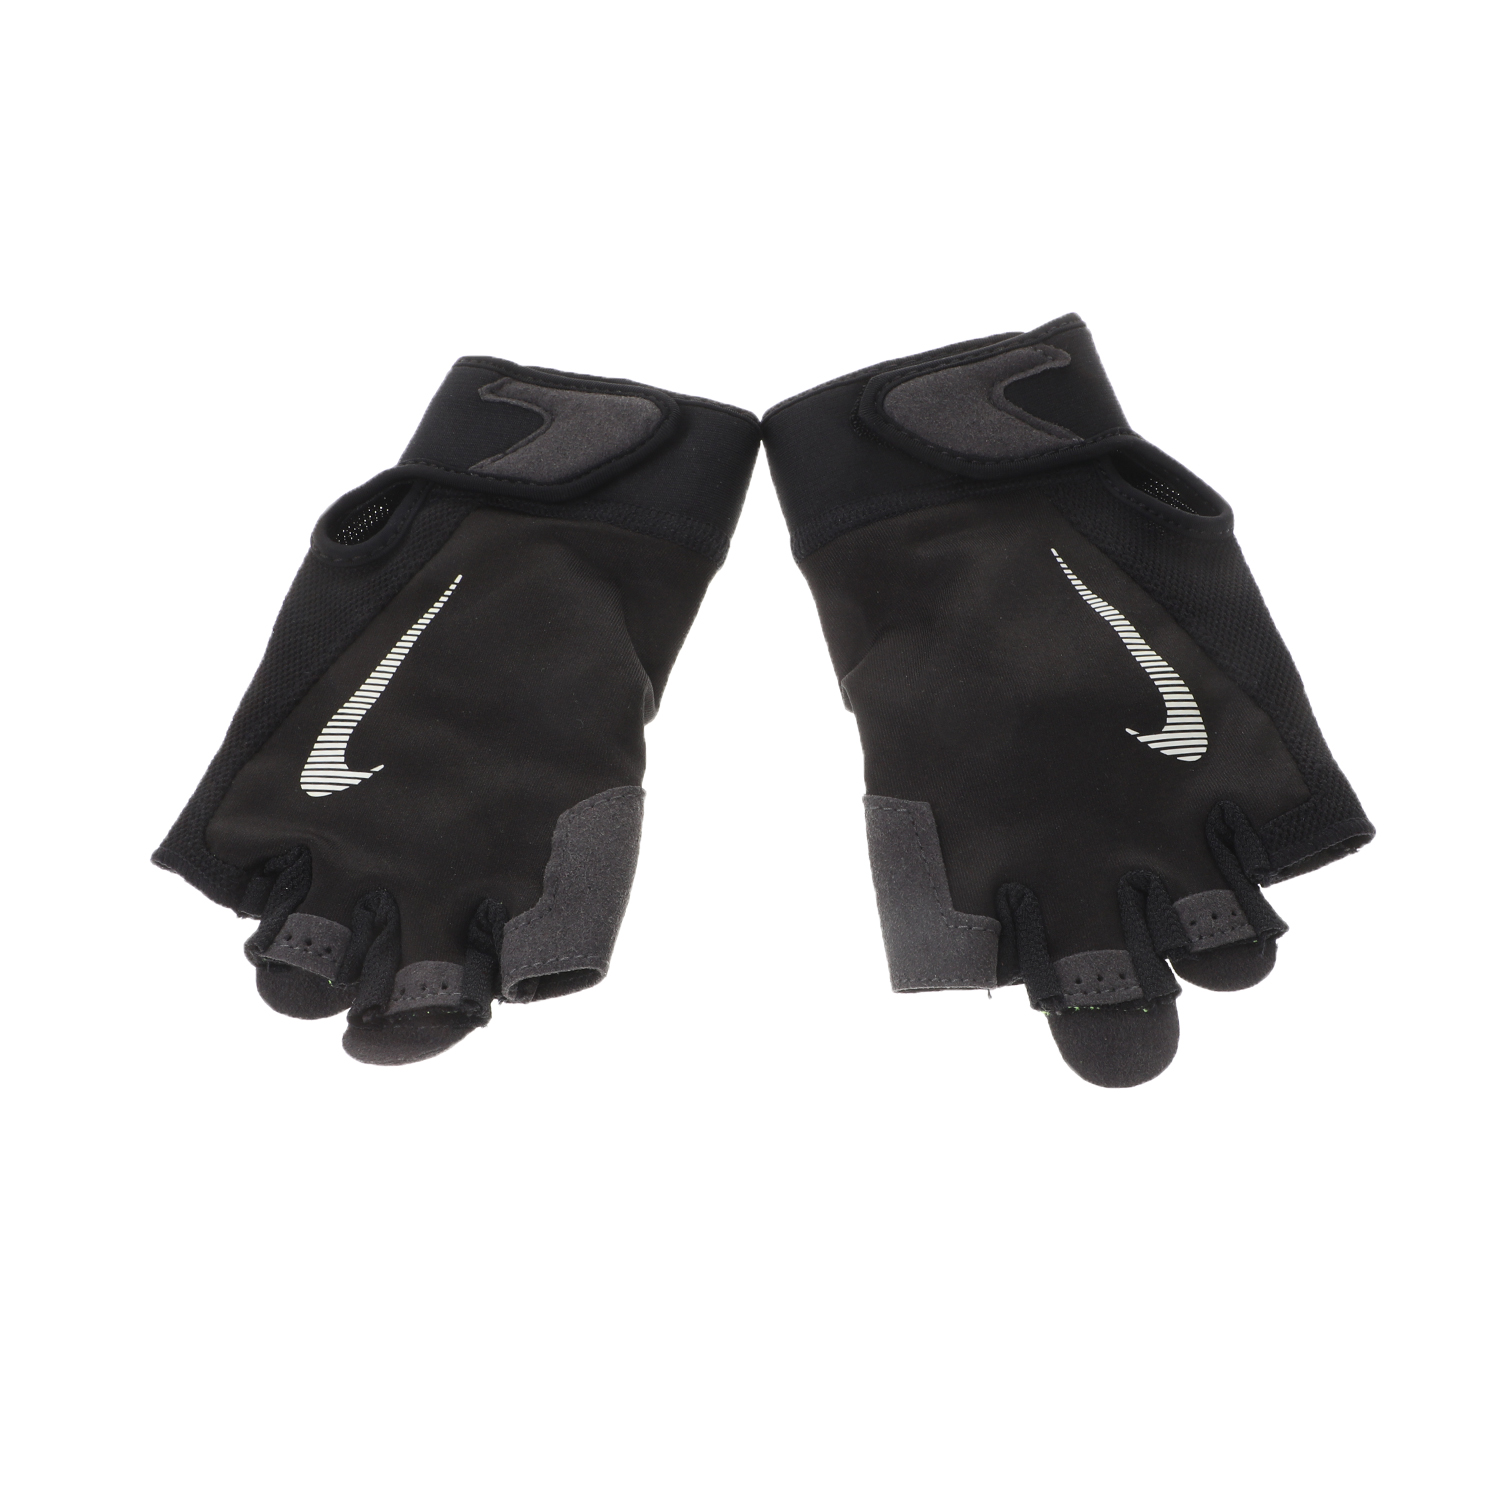 Ανδρικά/Αξεσουάρ/Αθλητικά Είδη/Εξοπλισμός NIKE - Ανδρικά γάντια προπόνησης NIKE N.LG.C2.MD ULTIMATE FITNESS μαύρα